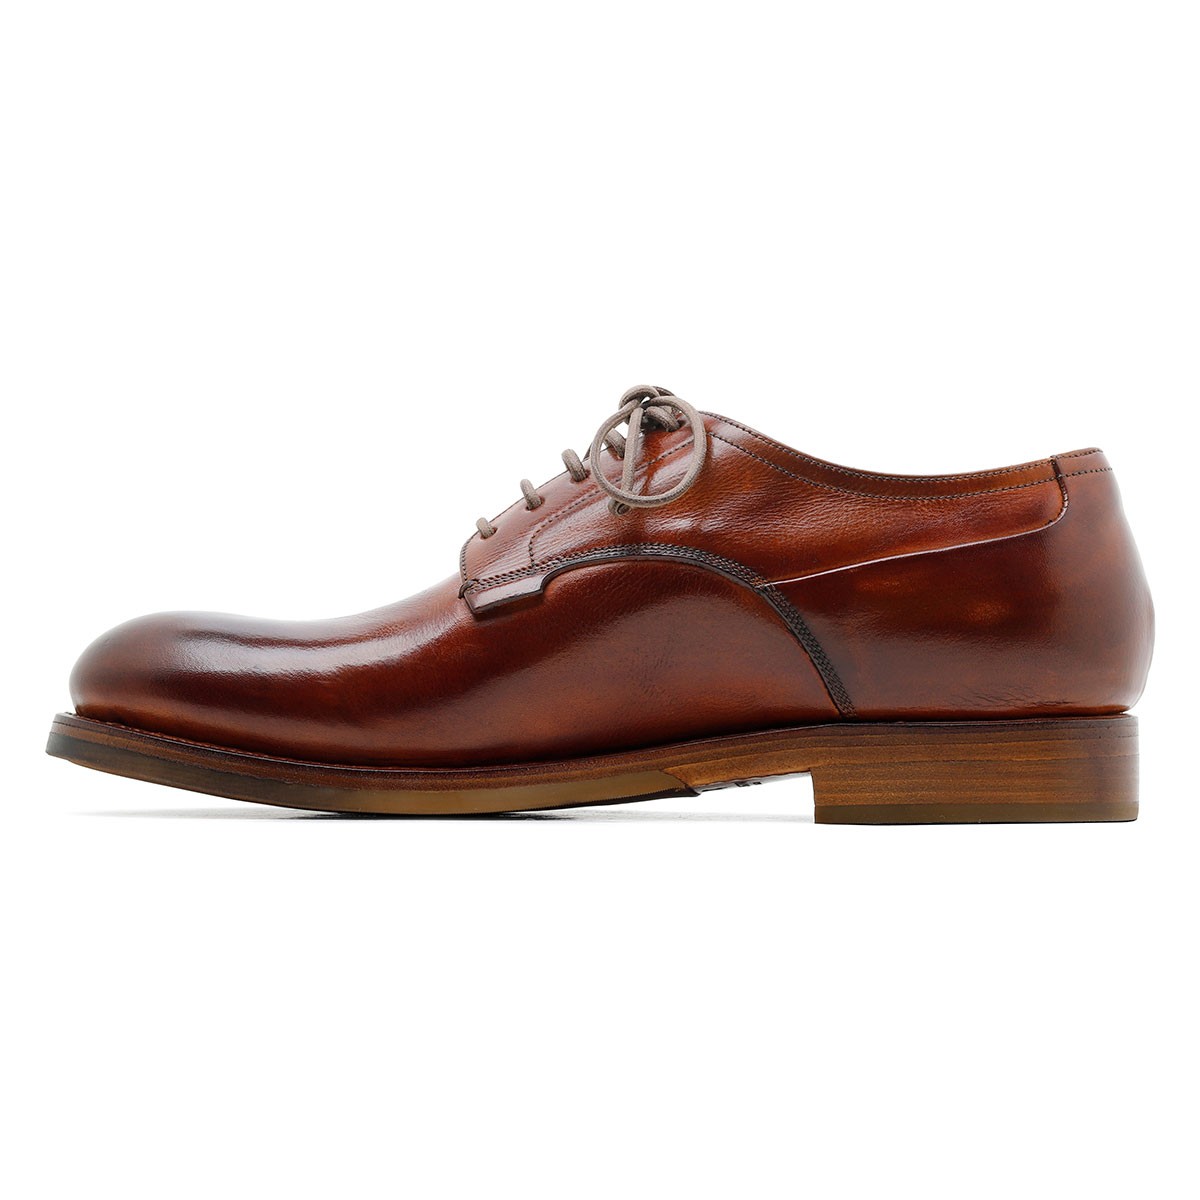 Zurigo brandy-hue leather Derby shoes